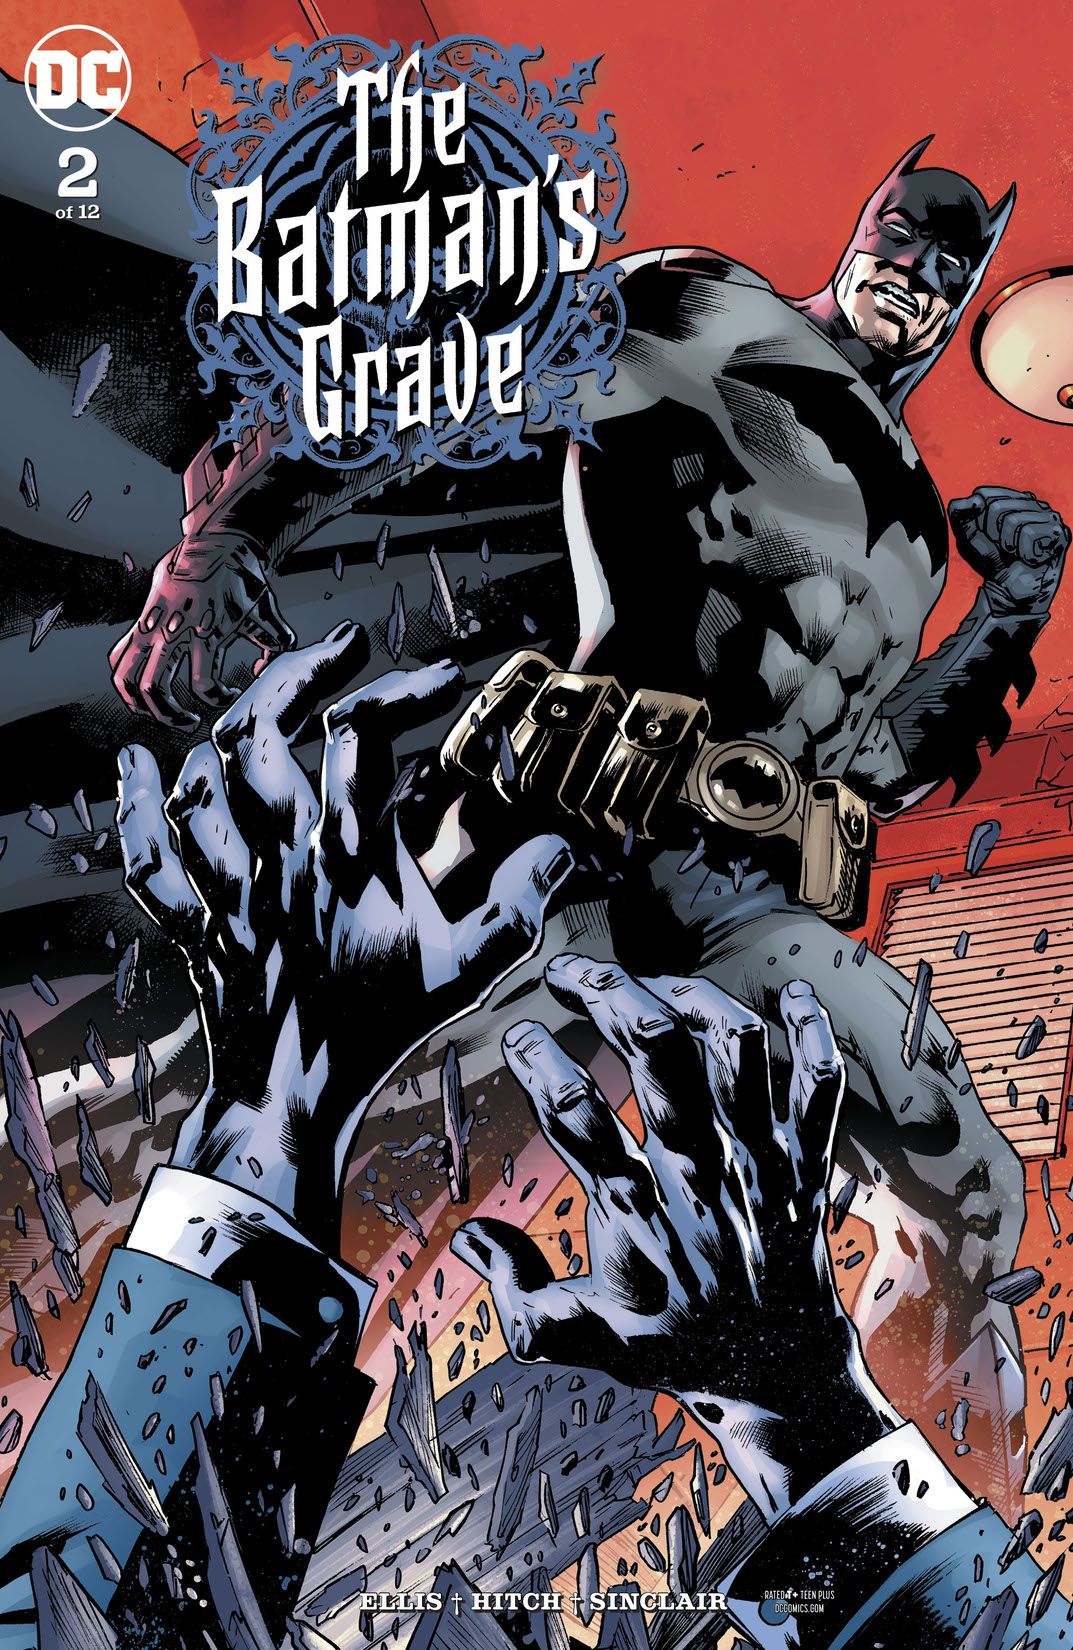 The Batman's Grave #2 preview images